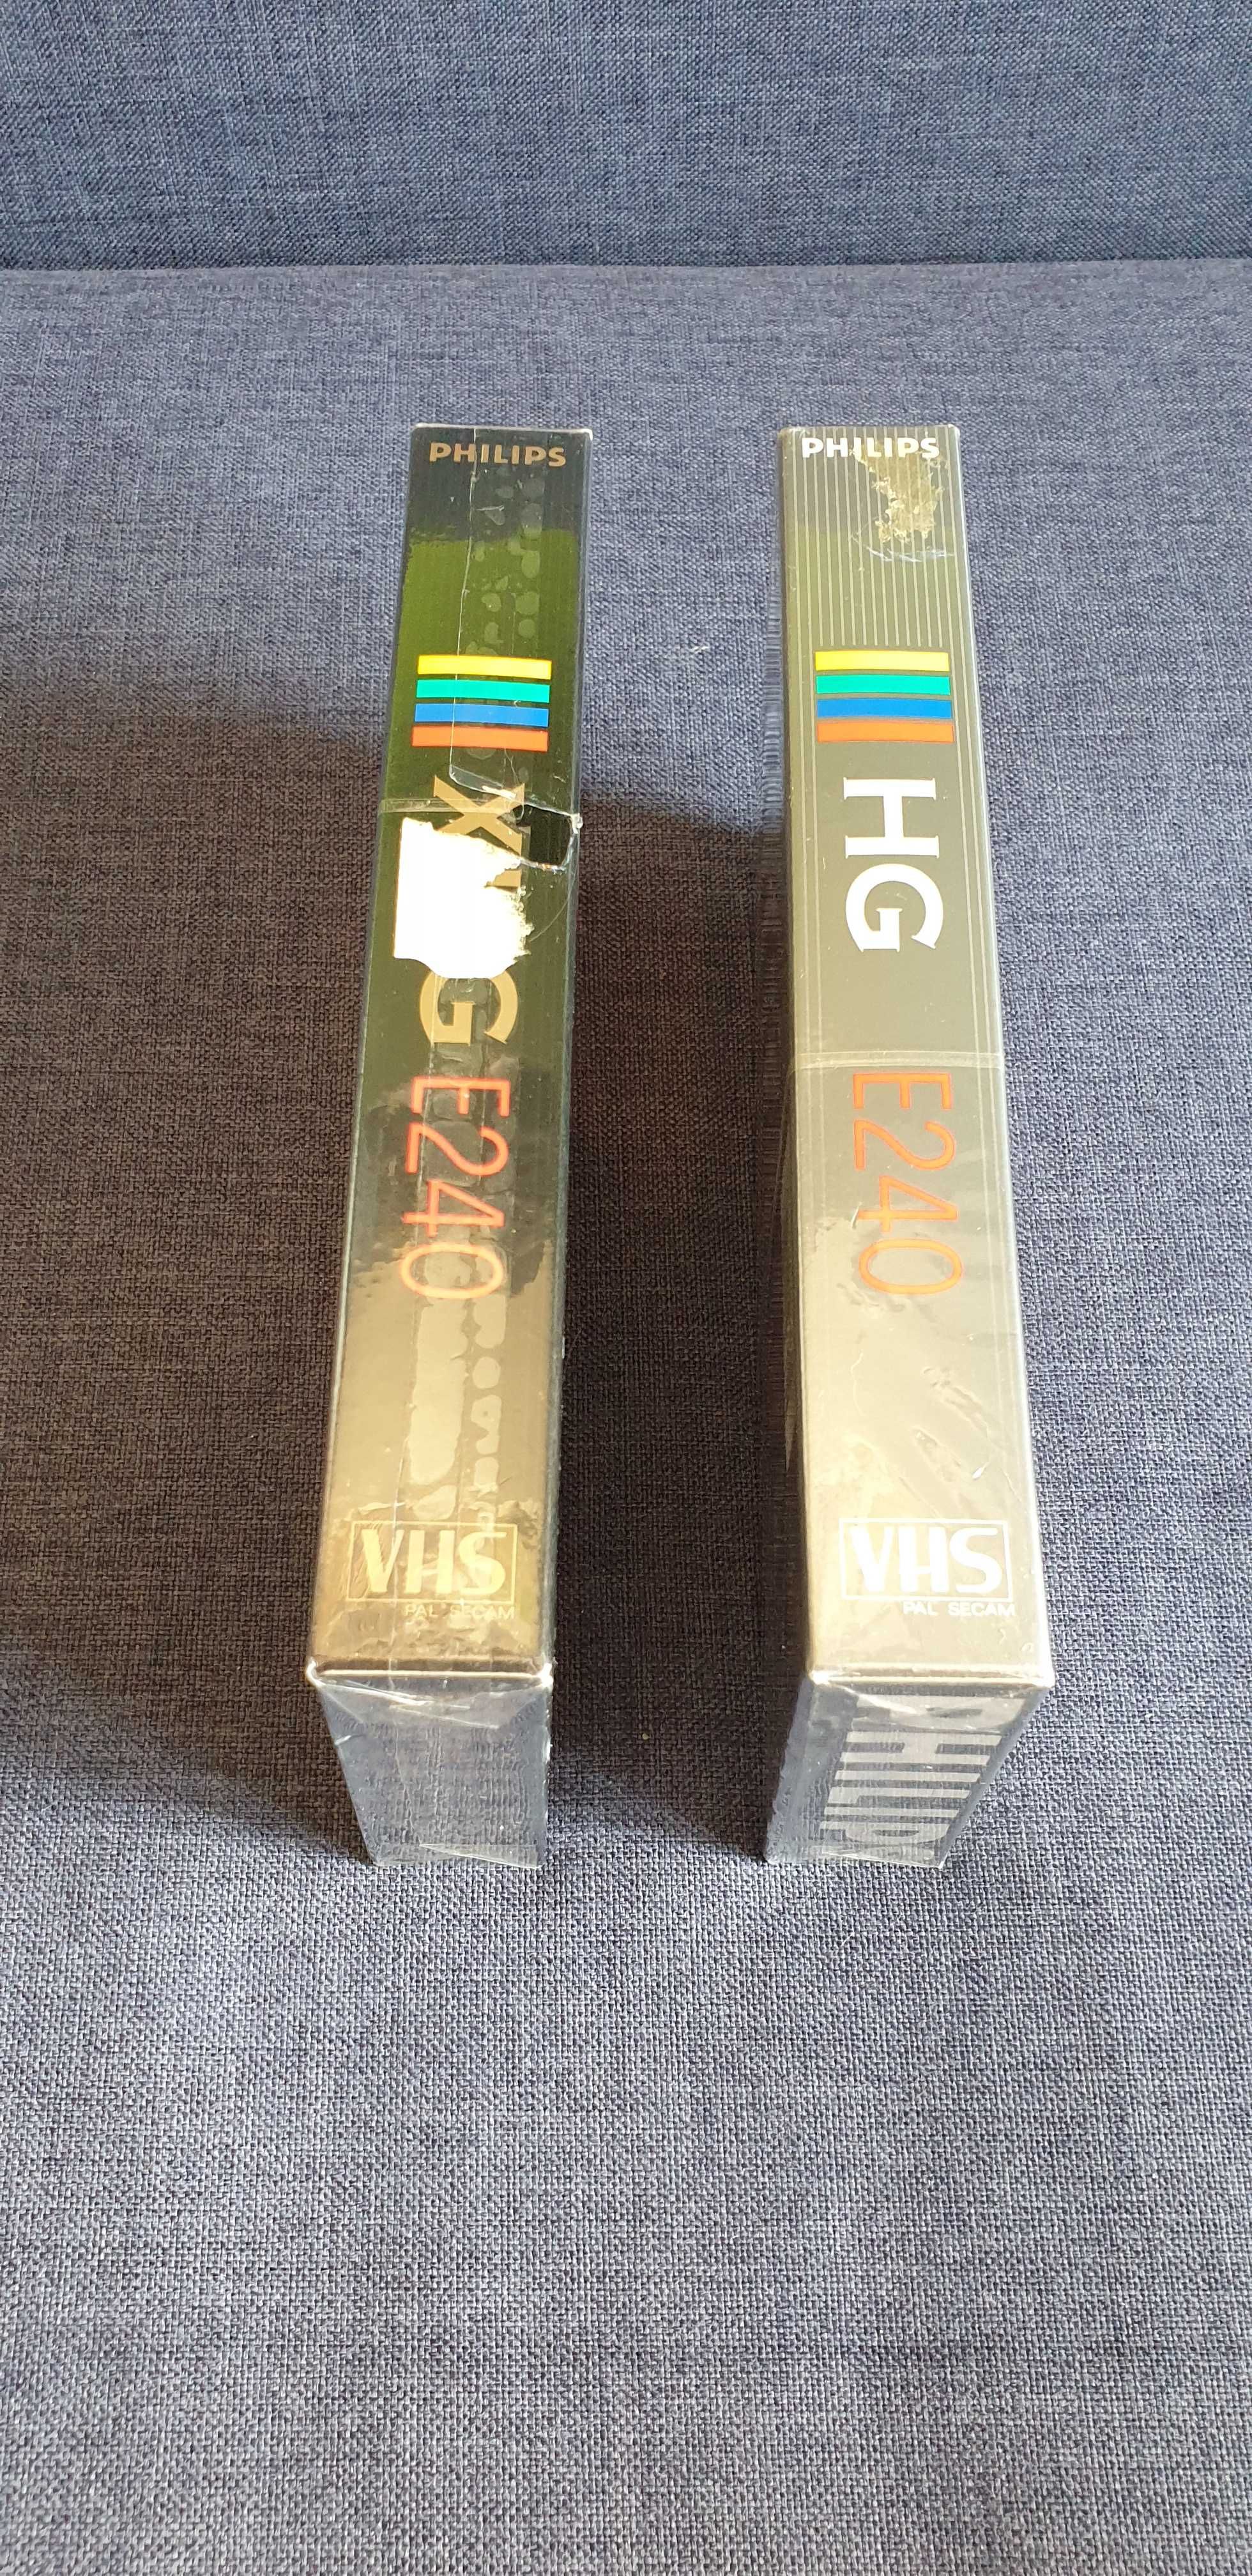 Philips XHG 240 Philips HG 240, kasety VHS, Nowe